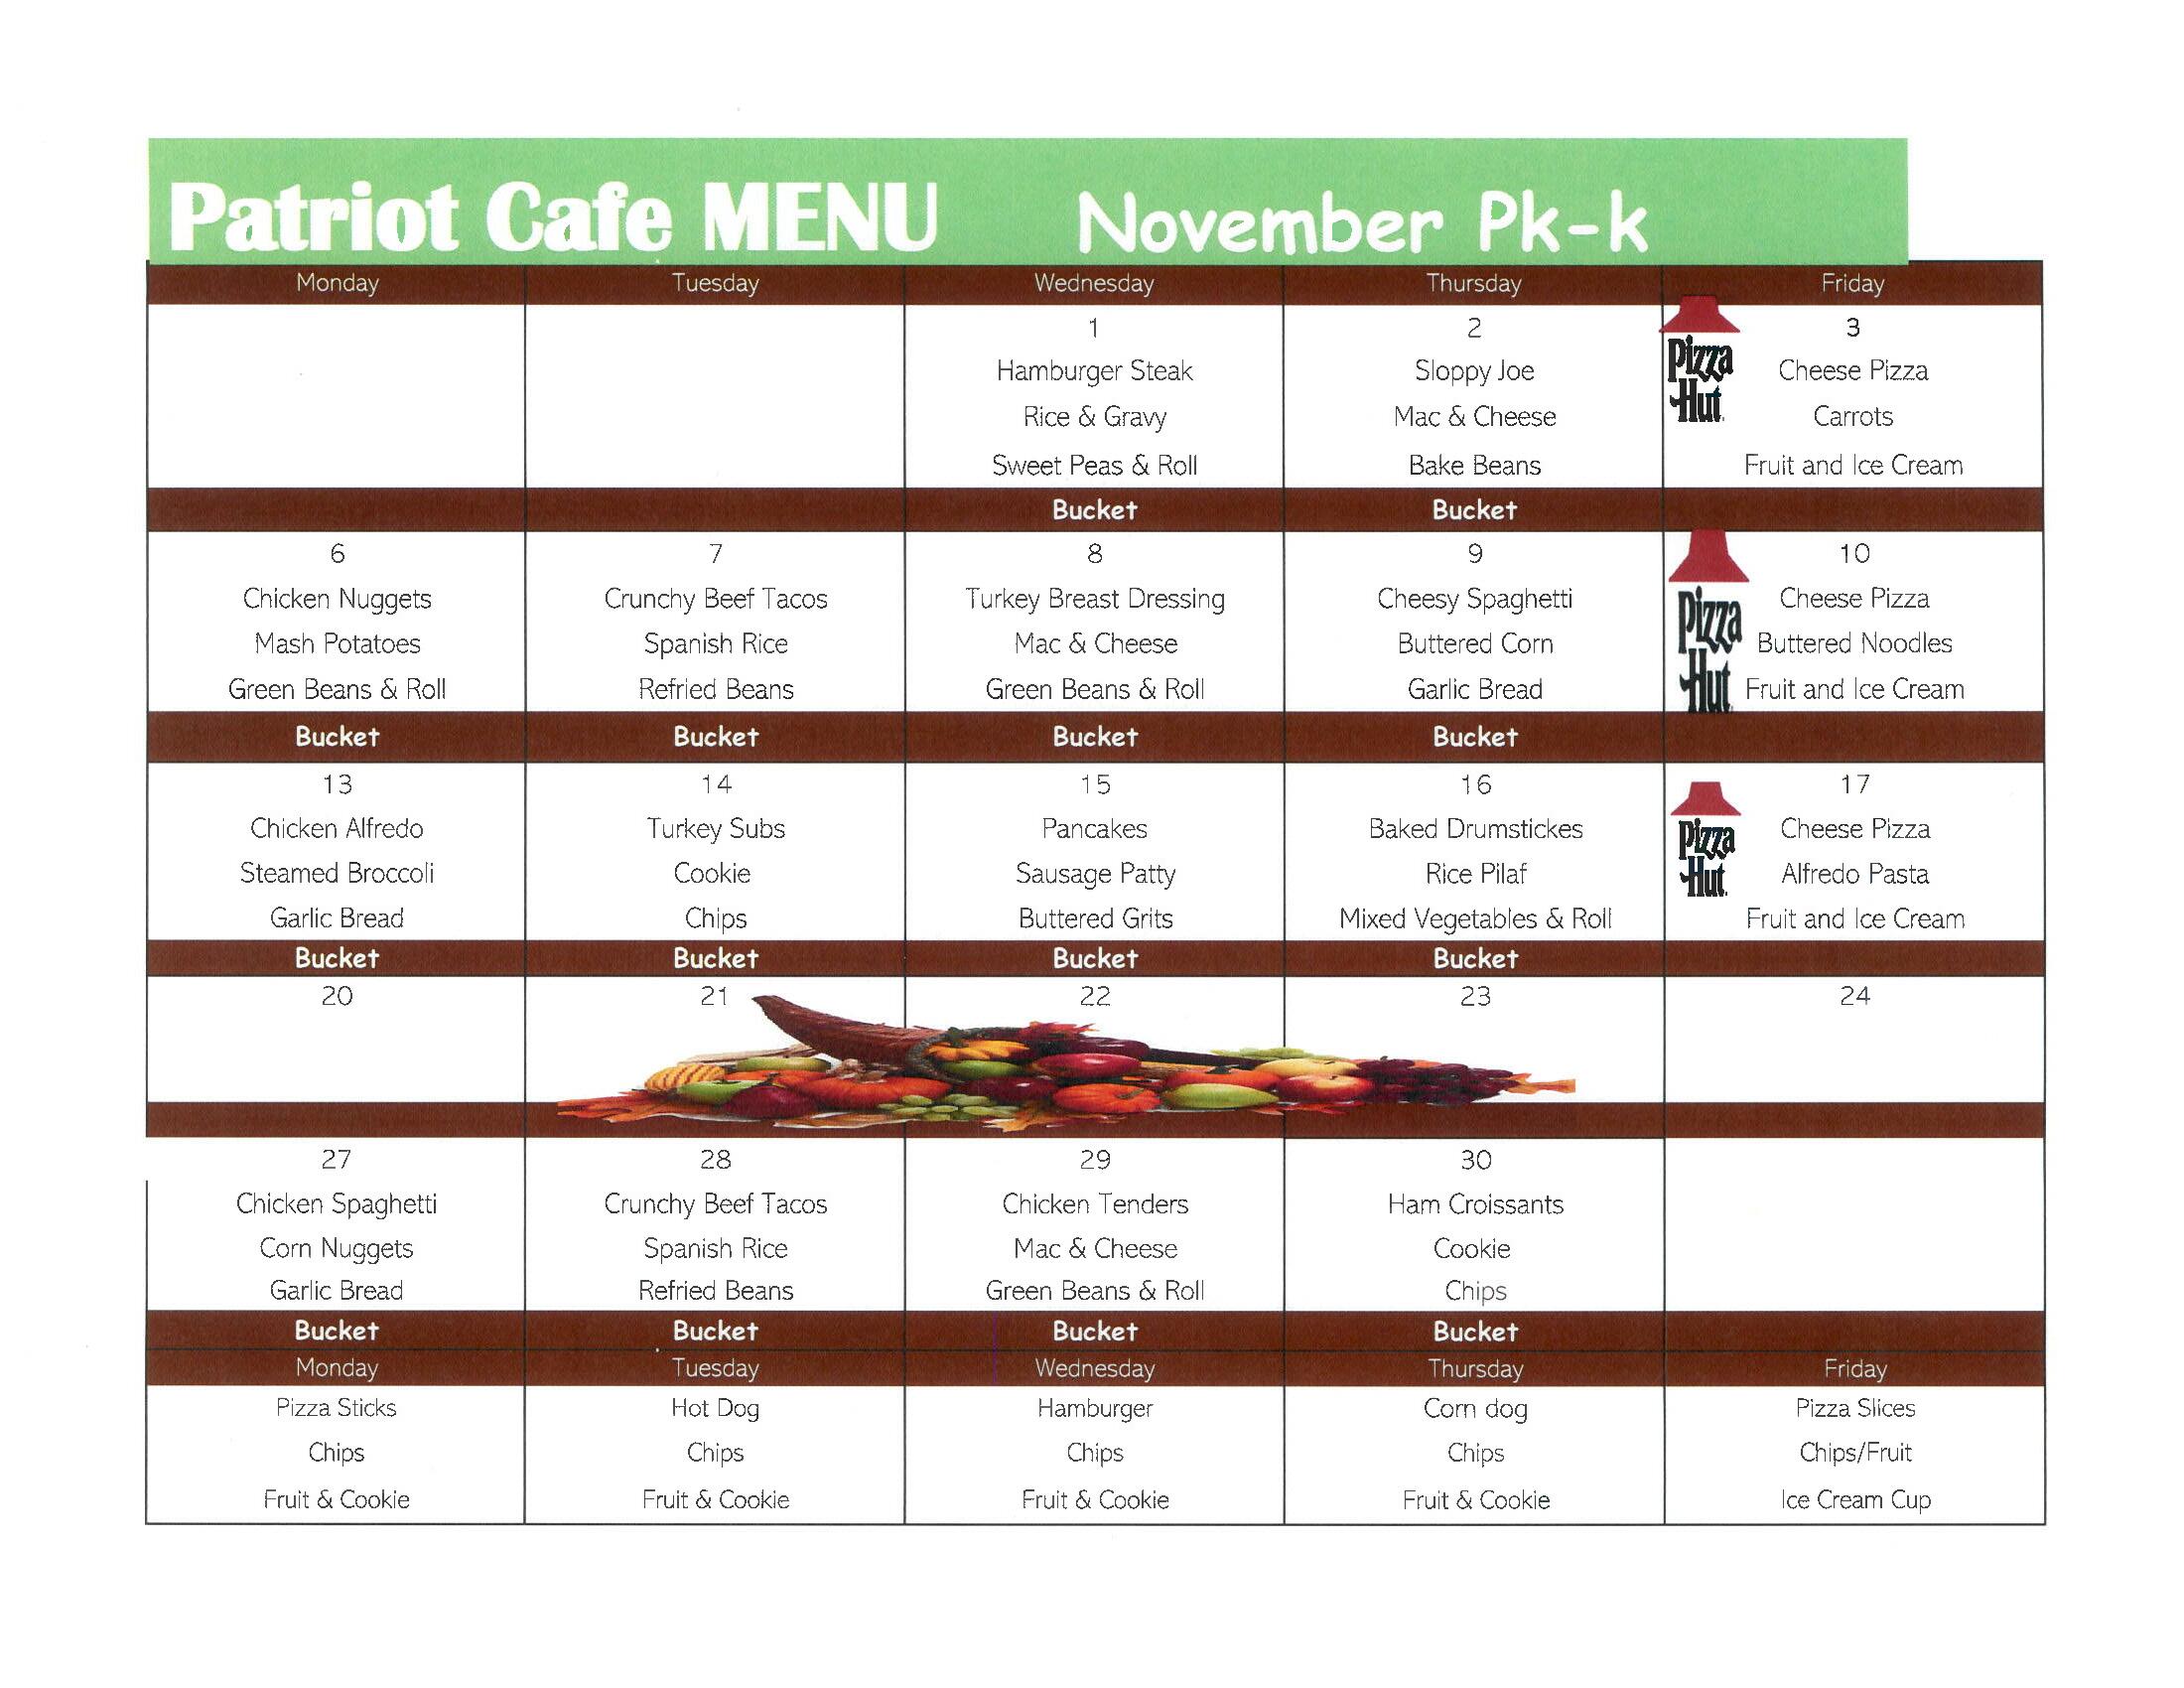 November Patriot Cafe Menu - PreK / K